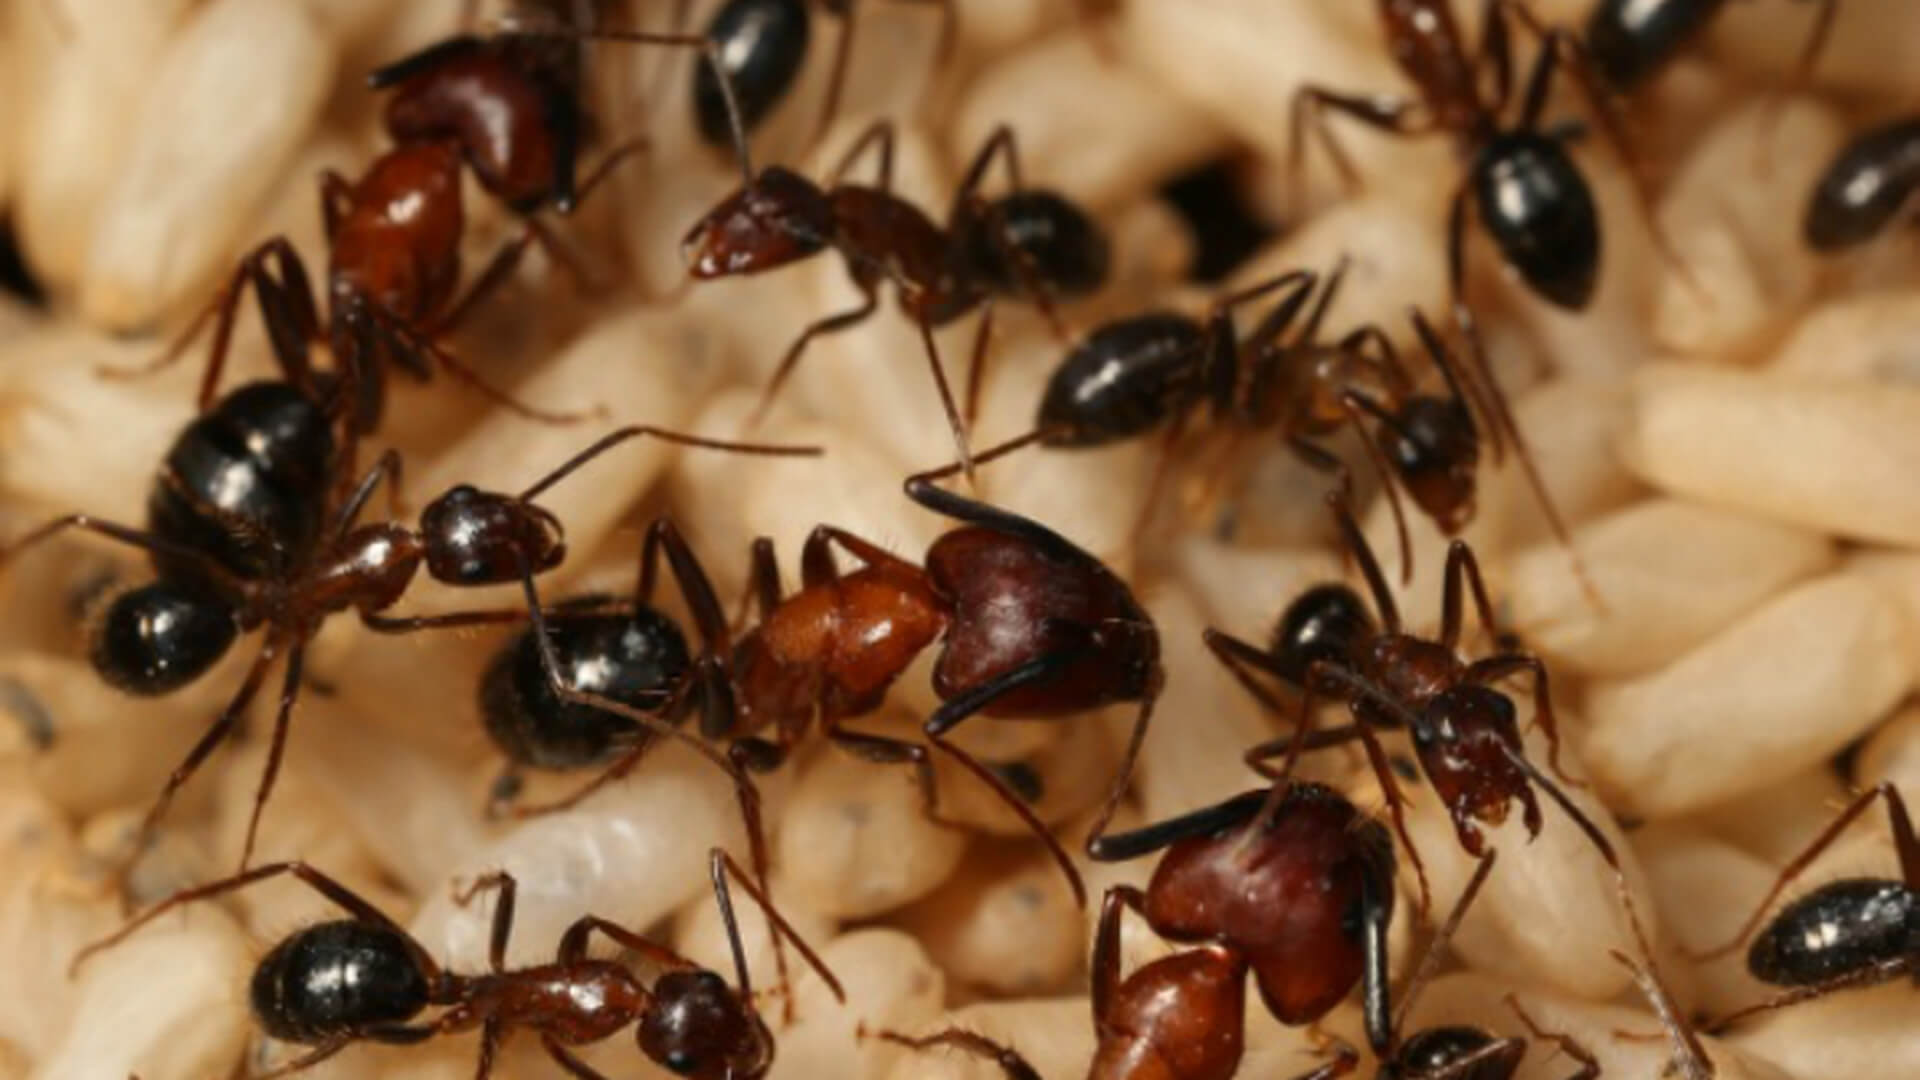 Bei einer Kolonie von Ameisen gibt es Erinnerungen, die nicht bei den Ameisen